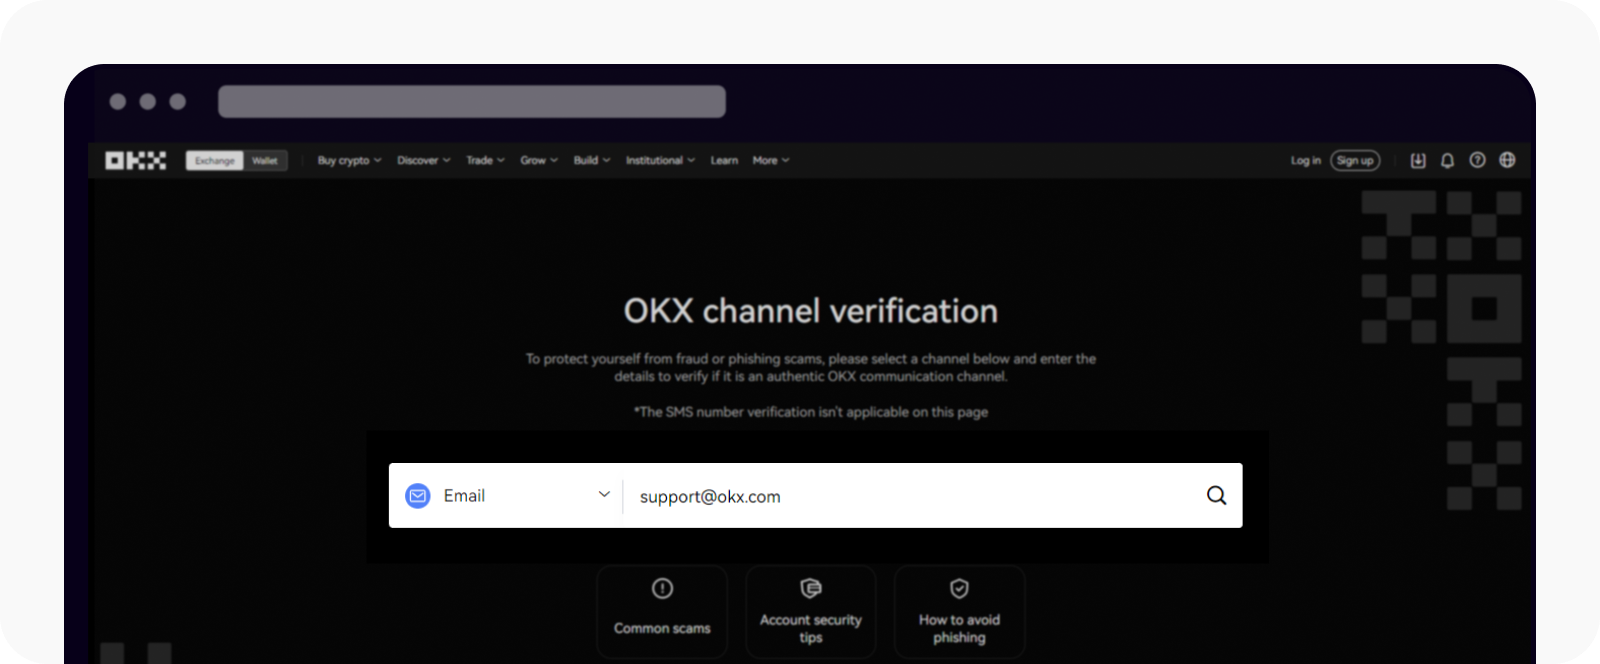 CT-web-channel verification-email verification